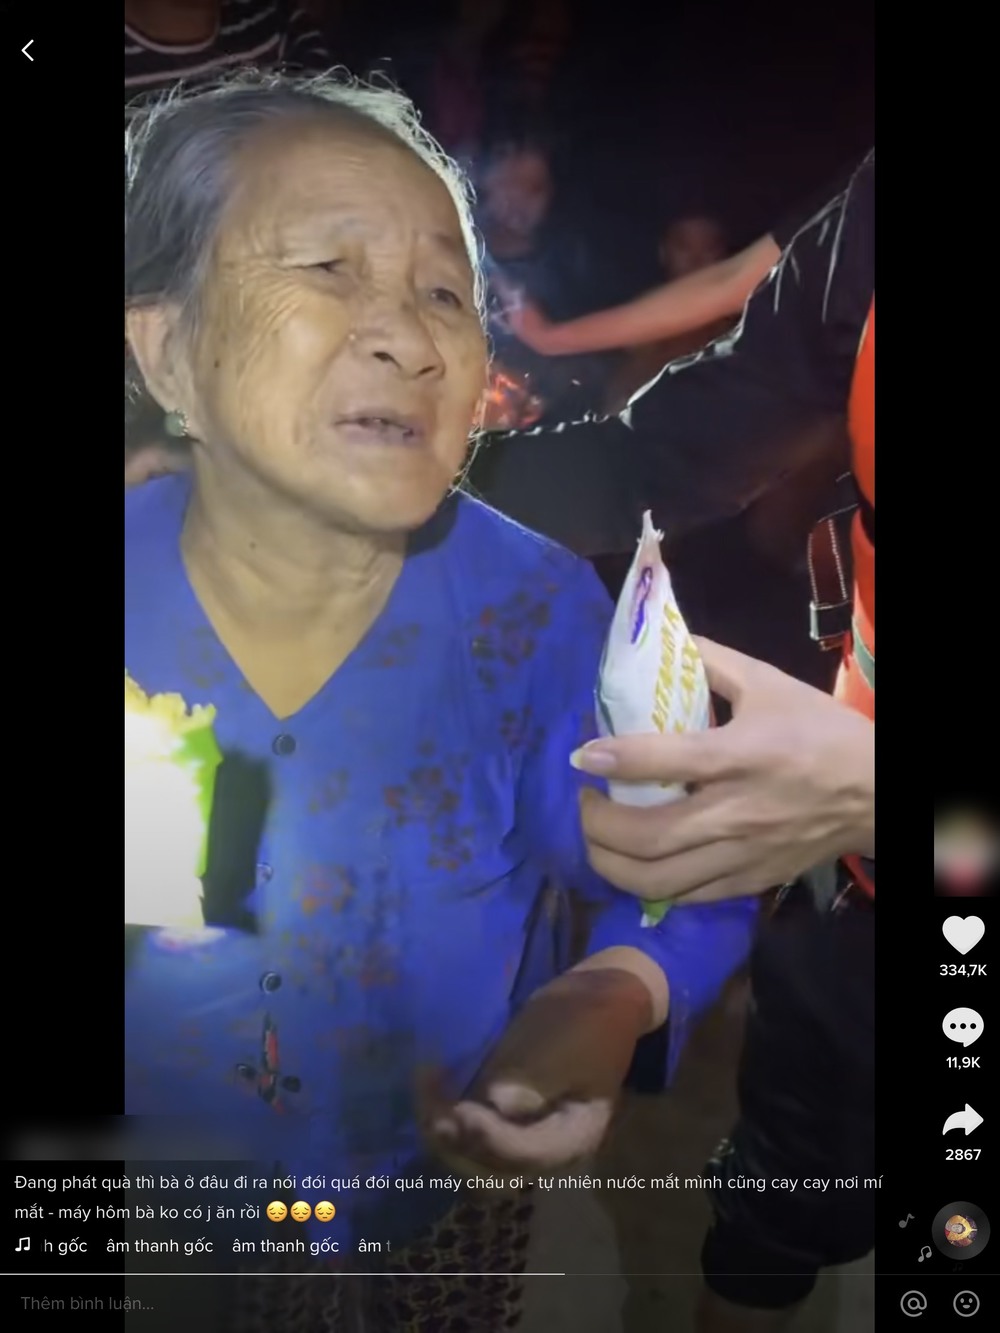  
Đoạn video ghi nhận hình ảnh bà lão ăn vội chiếc bánh tét sau bao ngày mưa lũ gây chú ý trên mạng xã hội. (Ảnh: Tik Tok Q.T) 